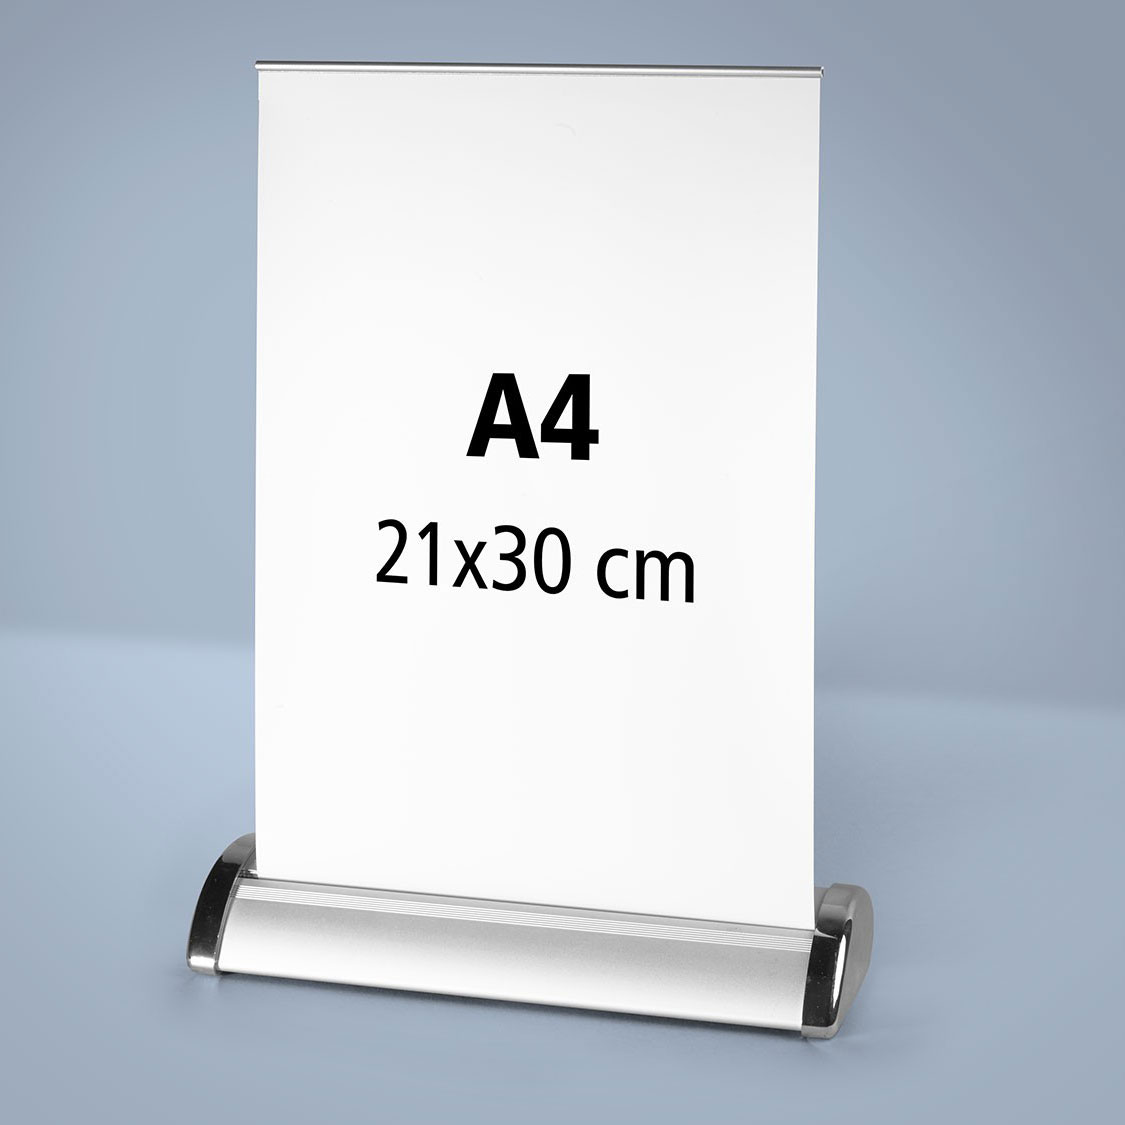 Un roll up publicitaire mini de comptoir format A4 21x29,7 cm imprimé et son affiche déroulée sur laquelle on peut lire A4 21x29,7 cm